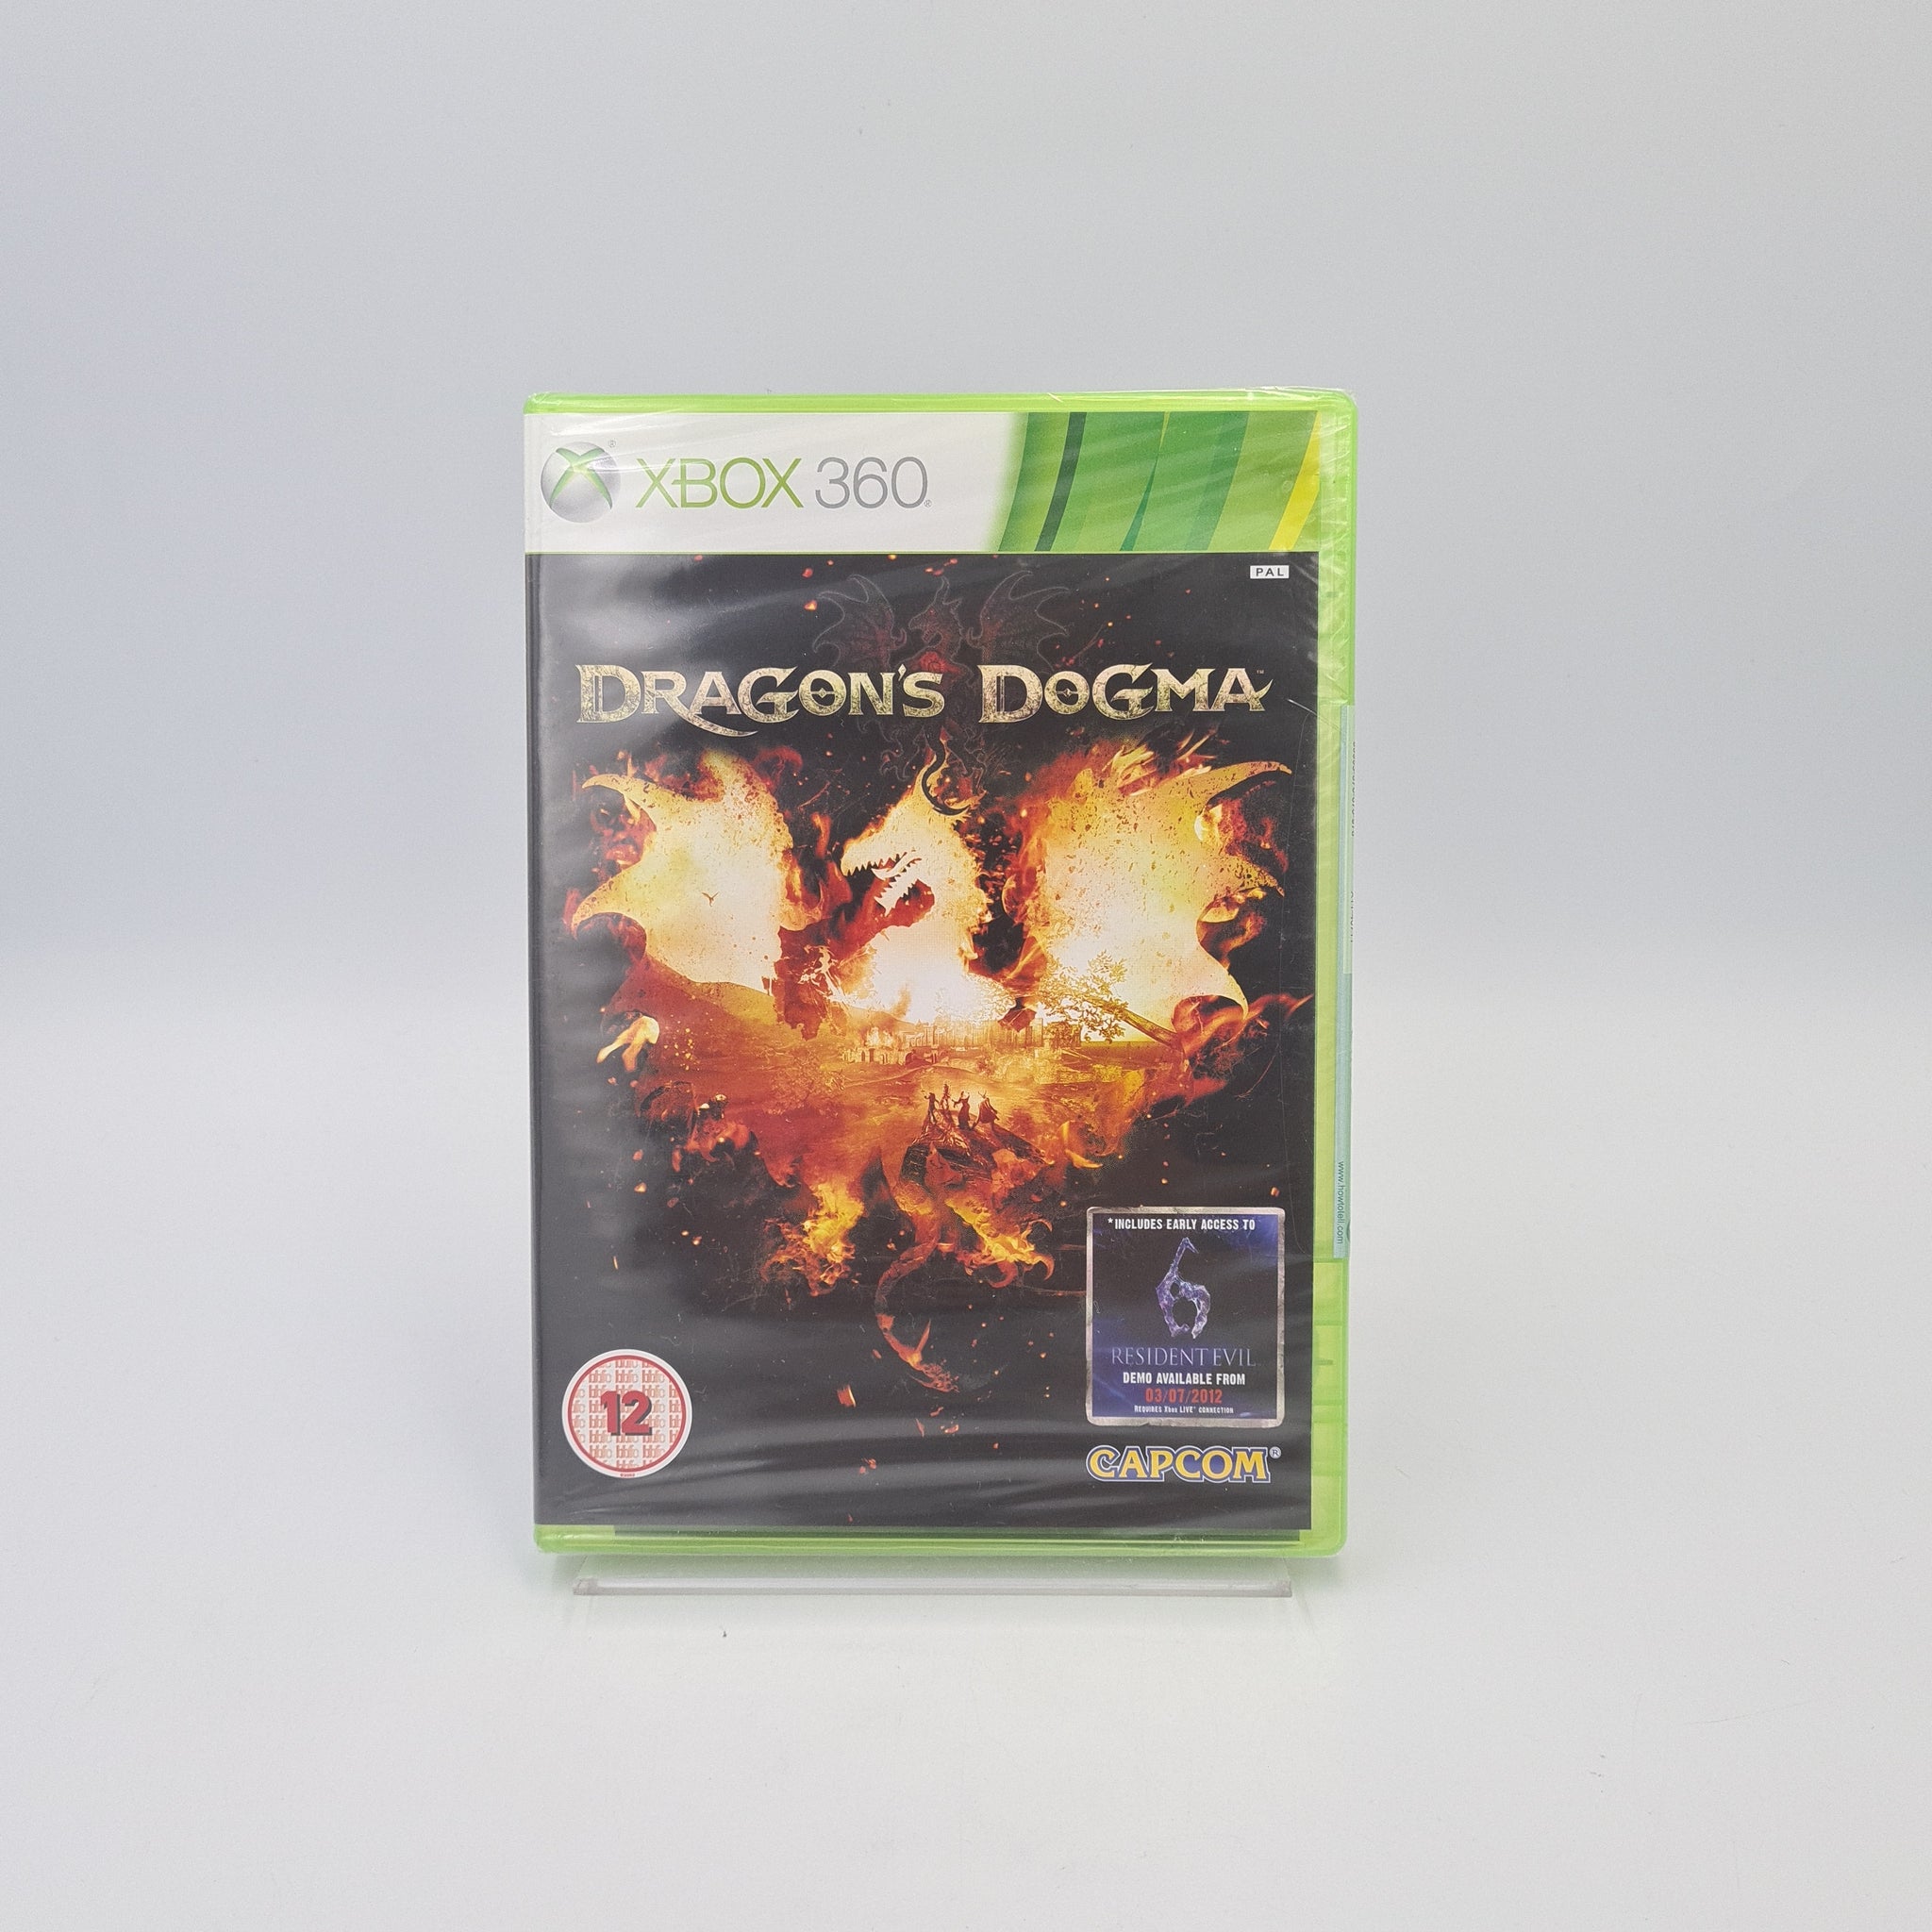 DRAGON'S DOGMA XBOX 360 NEW & SEALED